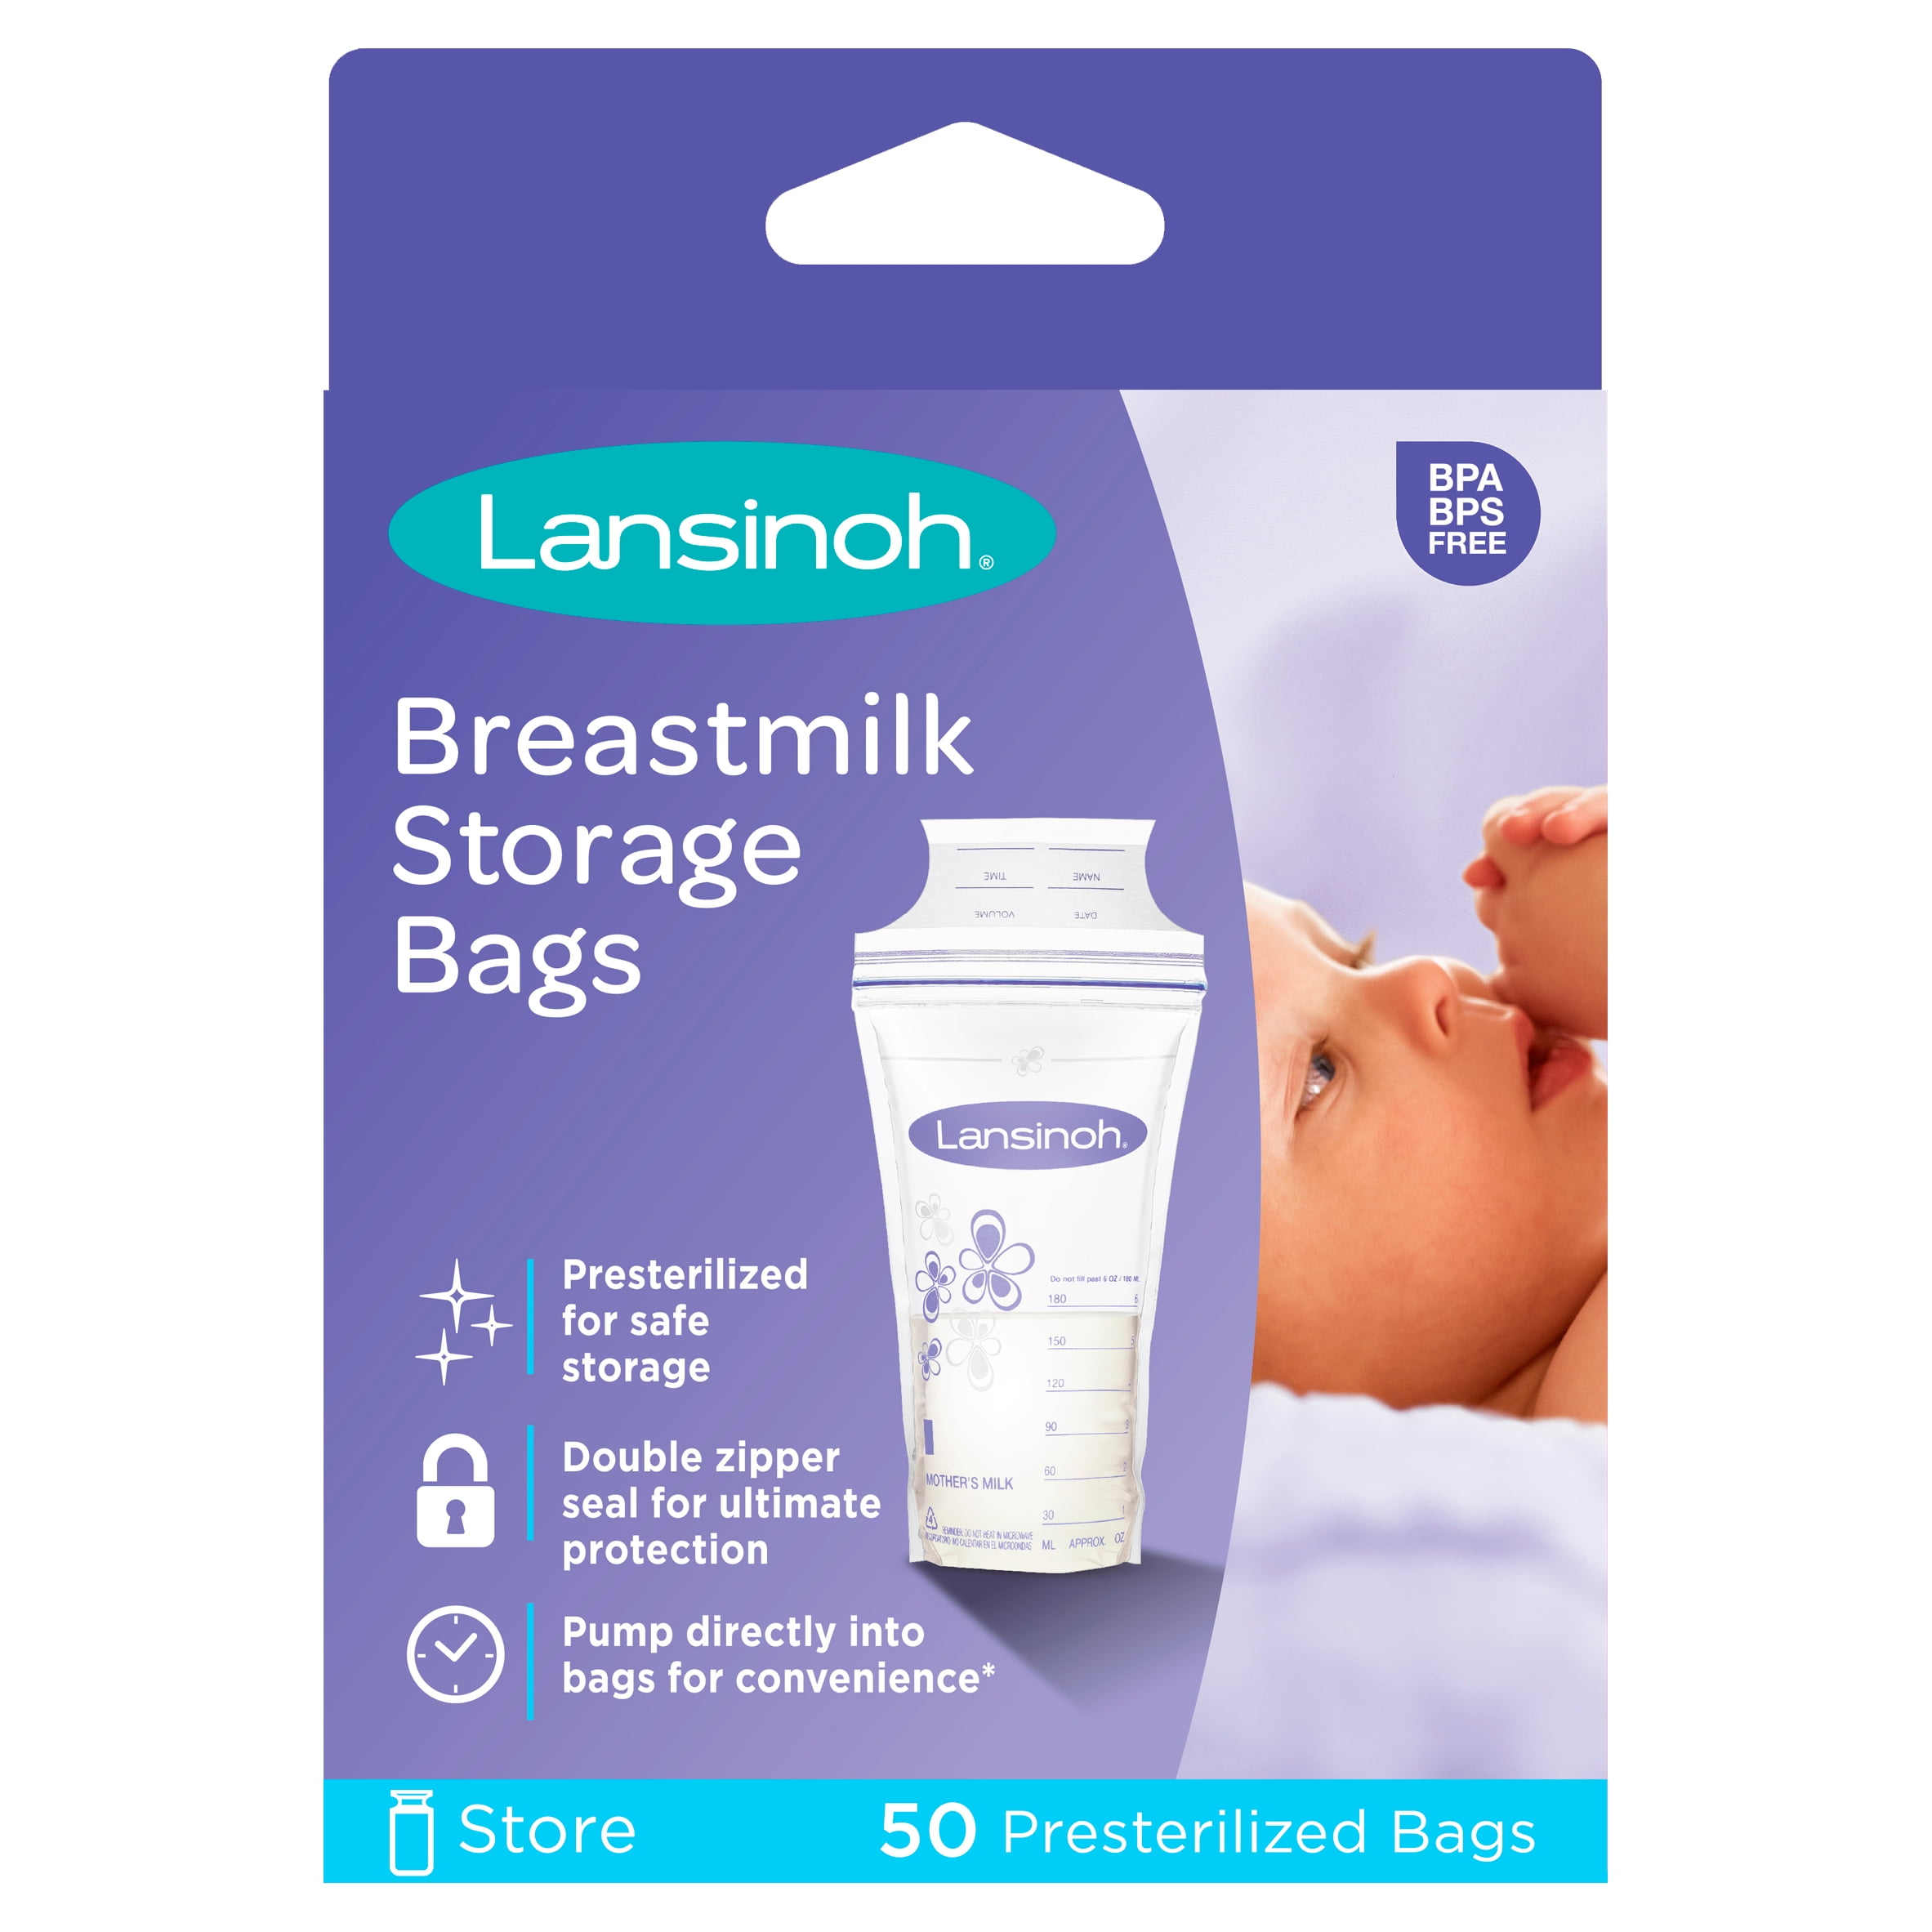 Lansinoh Breastmilk Storage Bags - 50 count